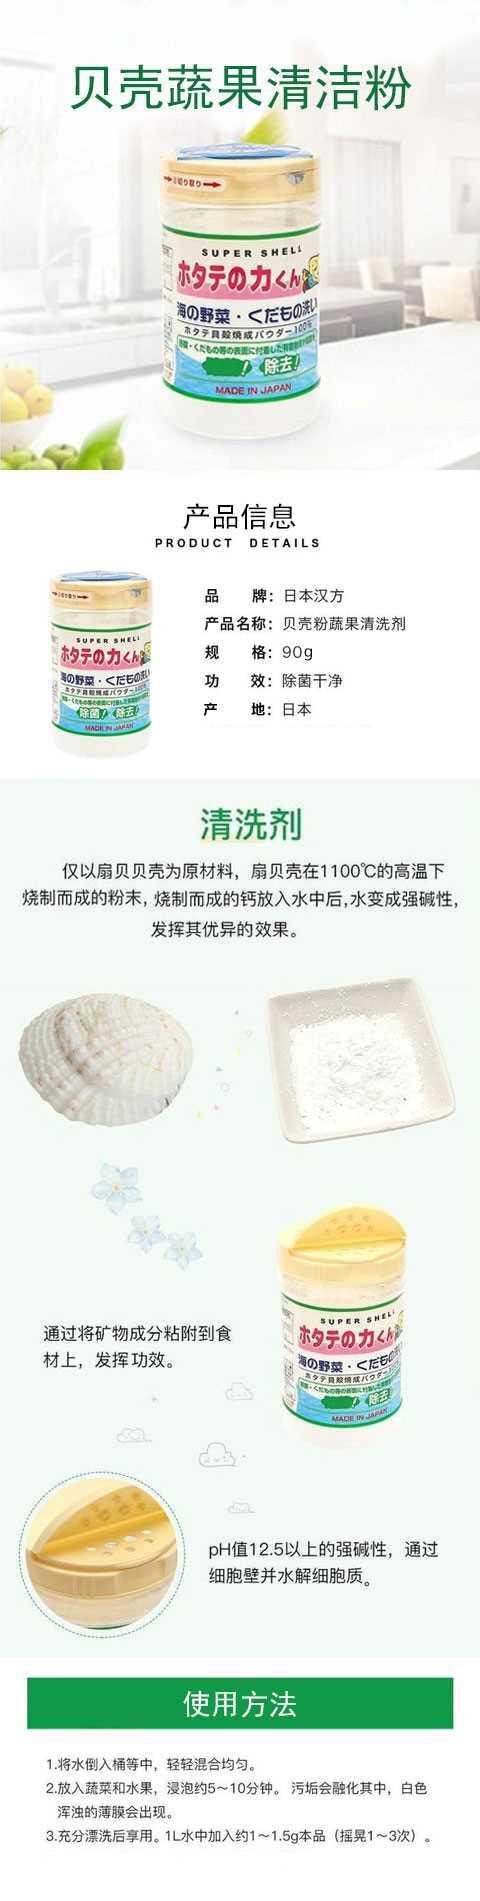 【日本直邮】MIRACLE POWER日本汉方研究所 贝壳粉蔬果清洗剂洗菜粉 90g